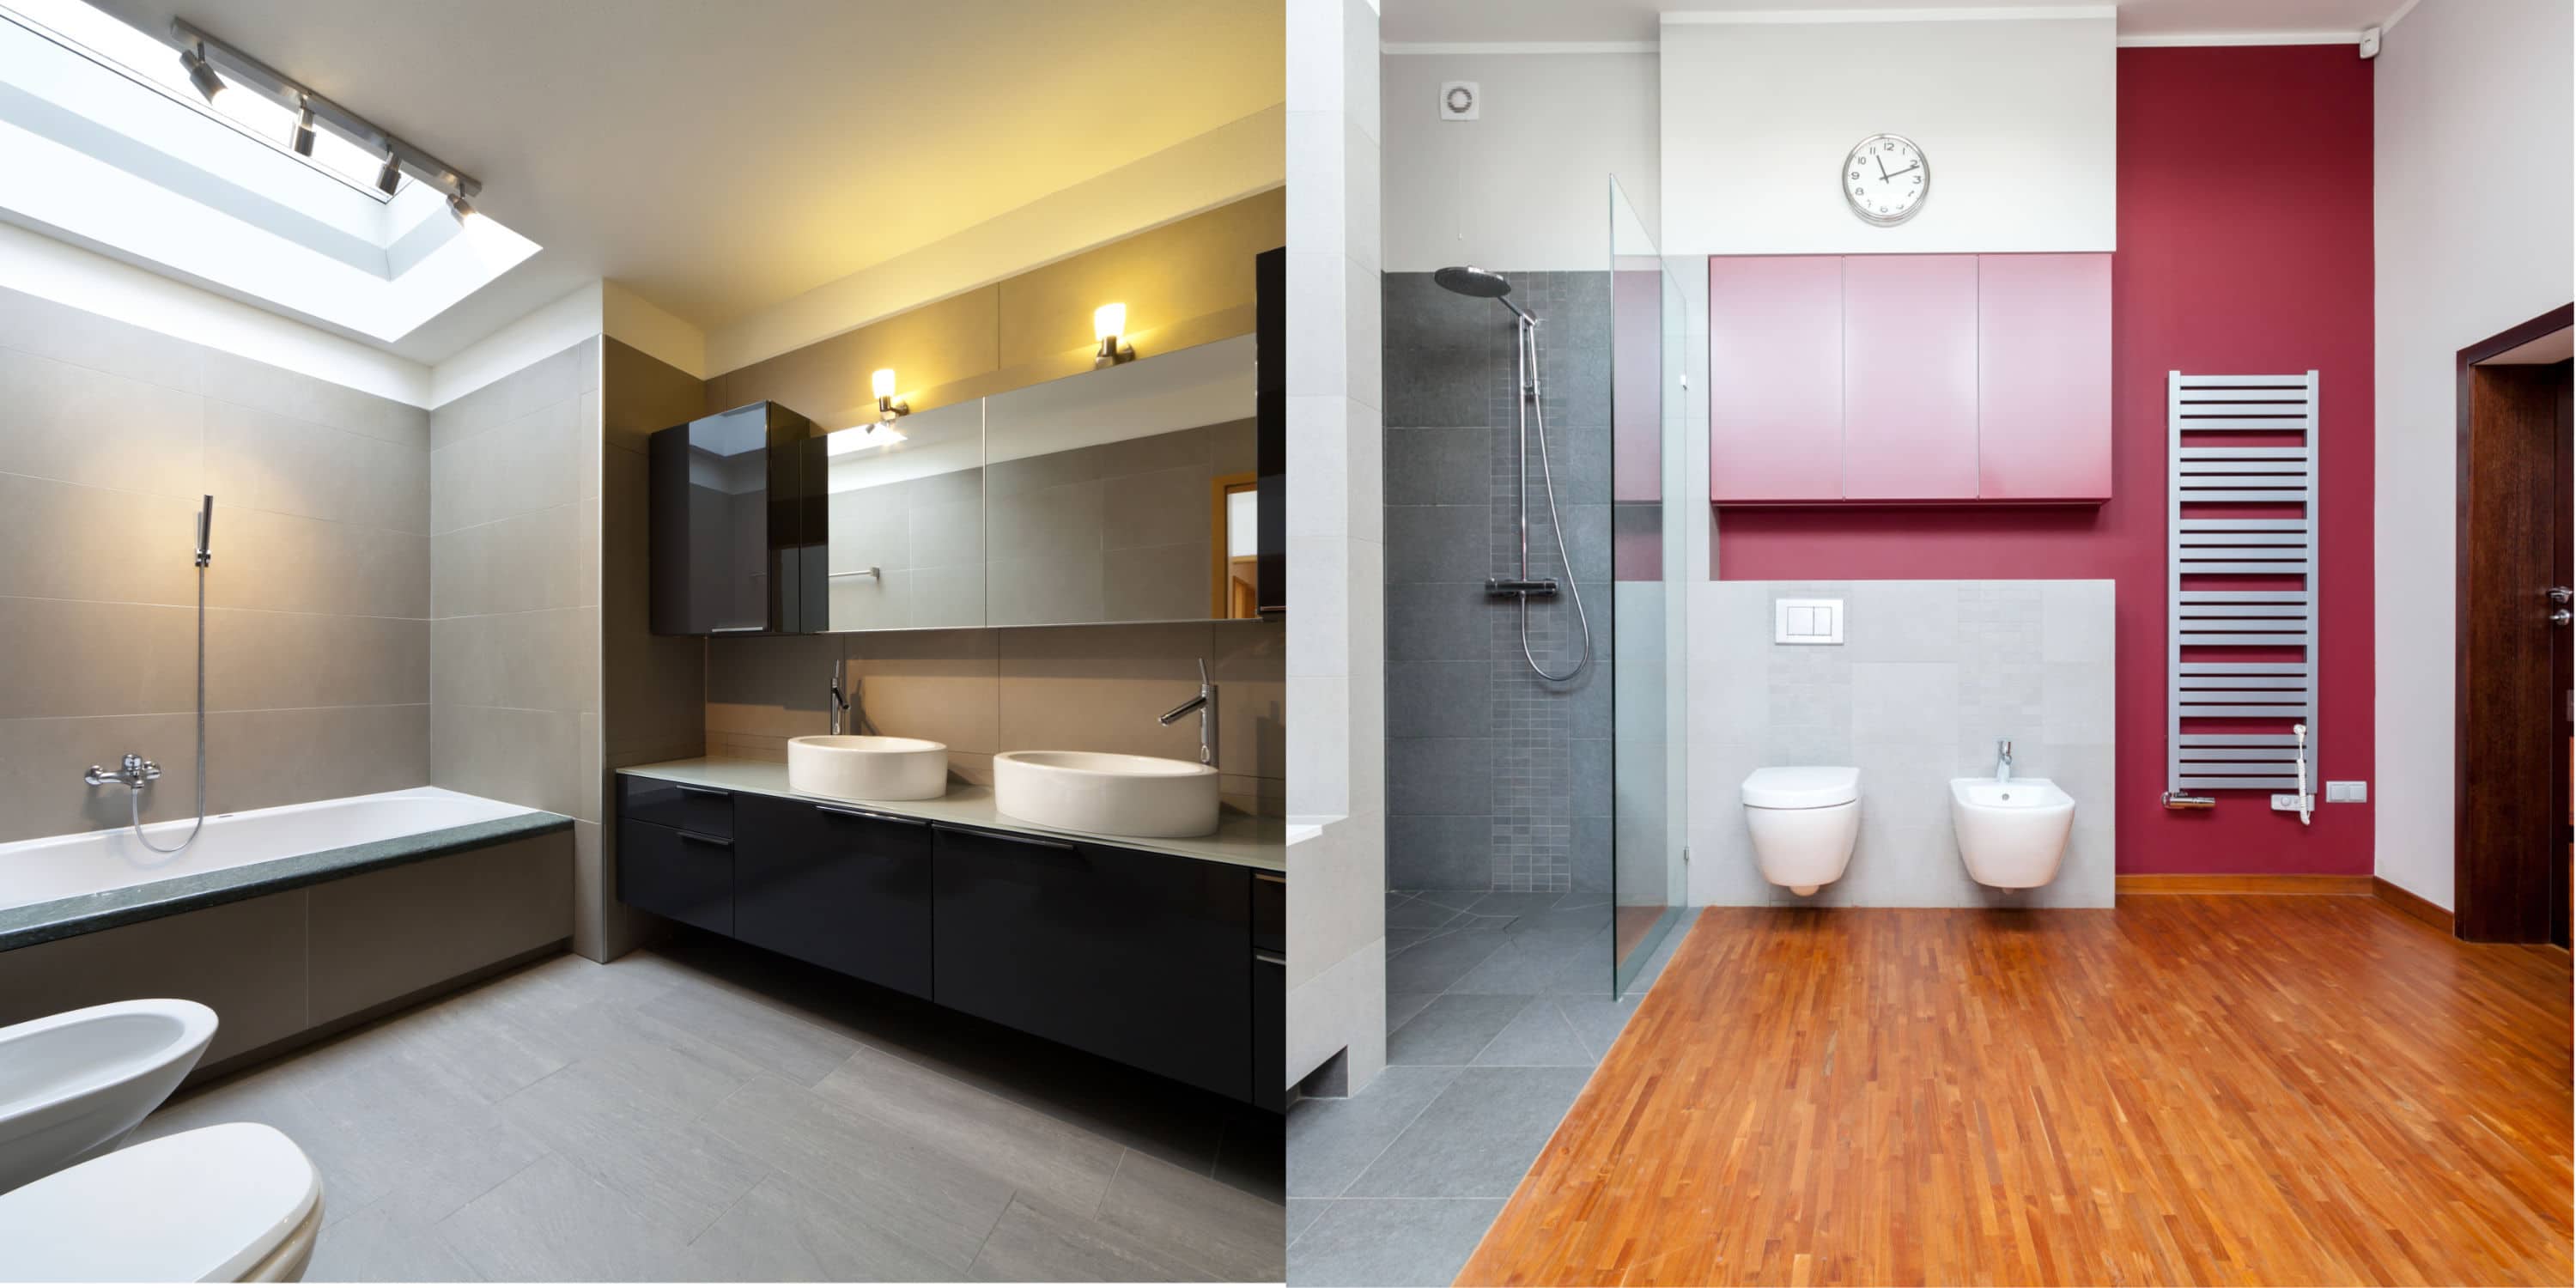 Badkamer vloer renoveren: werkwijze & aandachtspunten [+ Prijs]